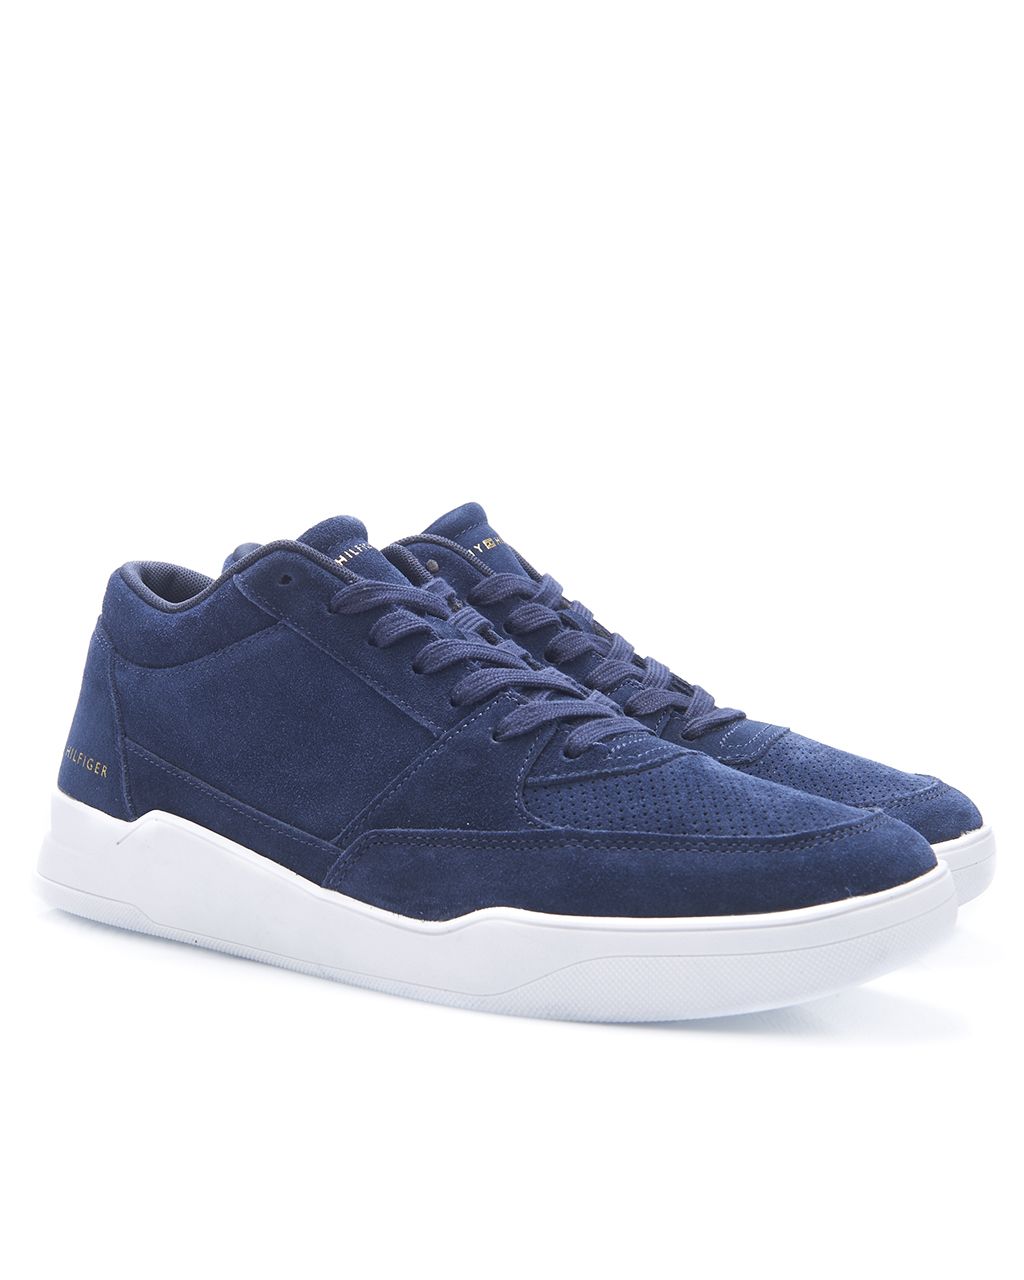 Tommy Hilfiger Menswear Casual schoenen Donker blauw 081206-001-41